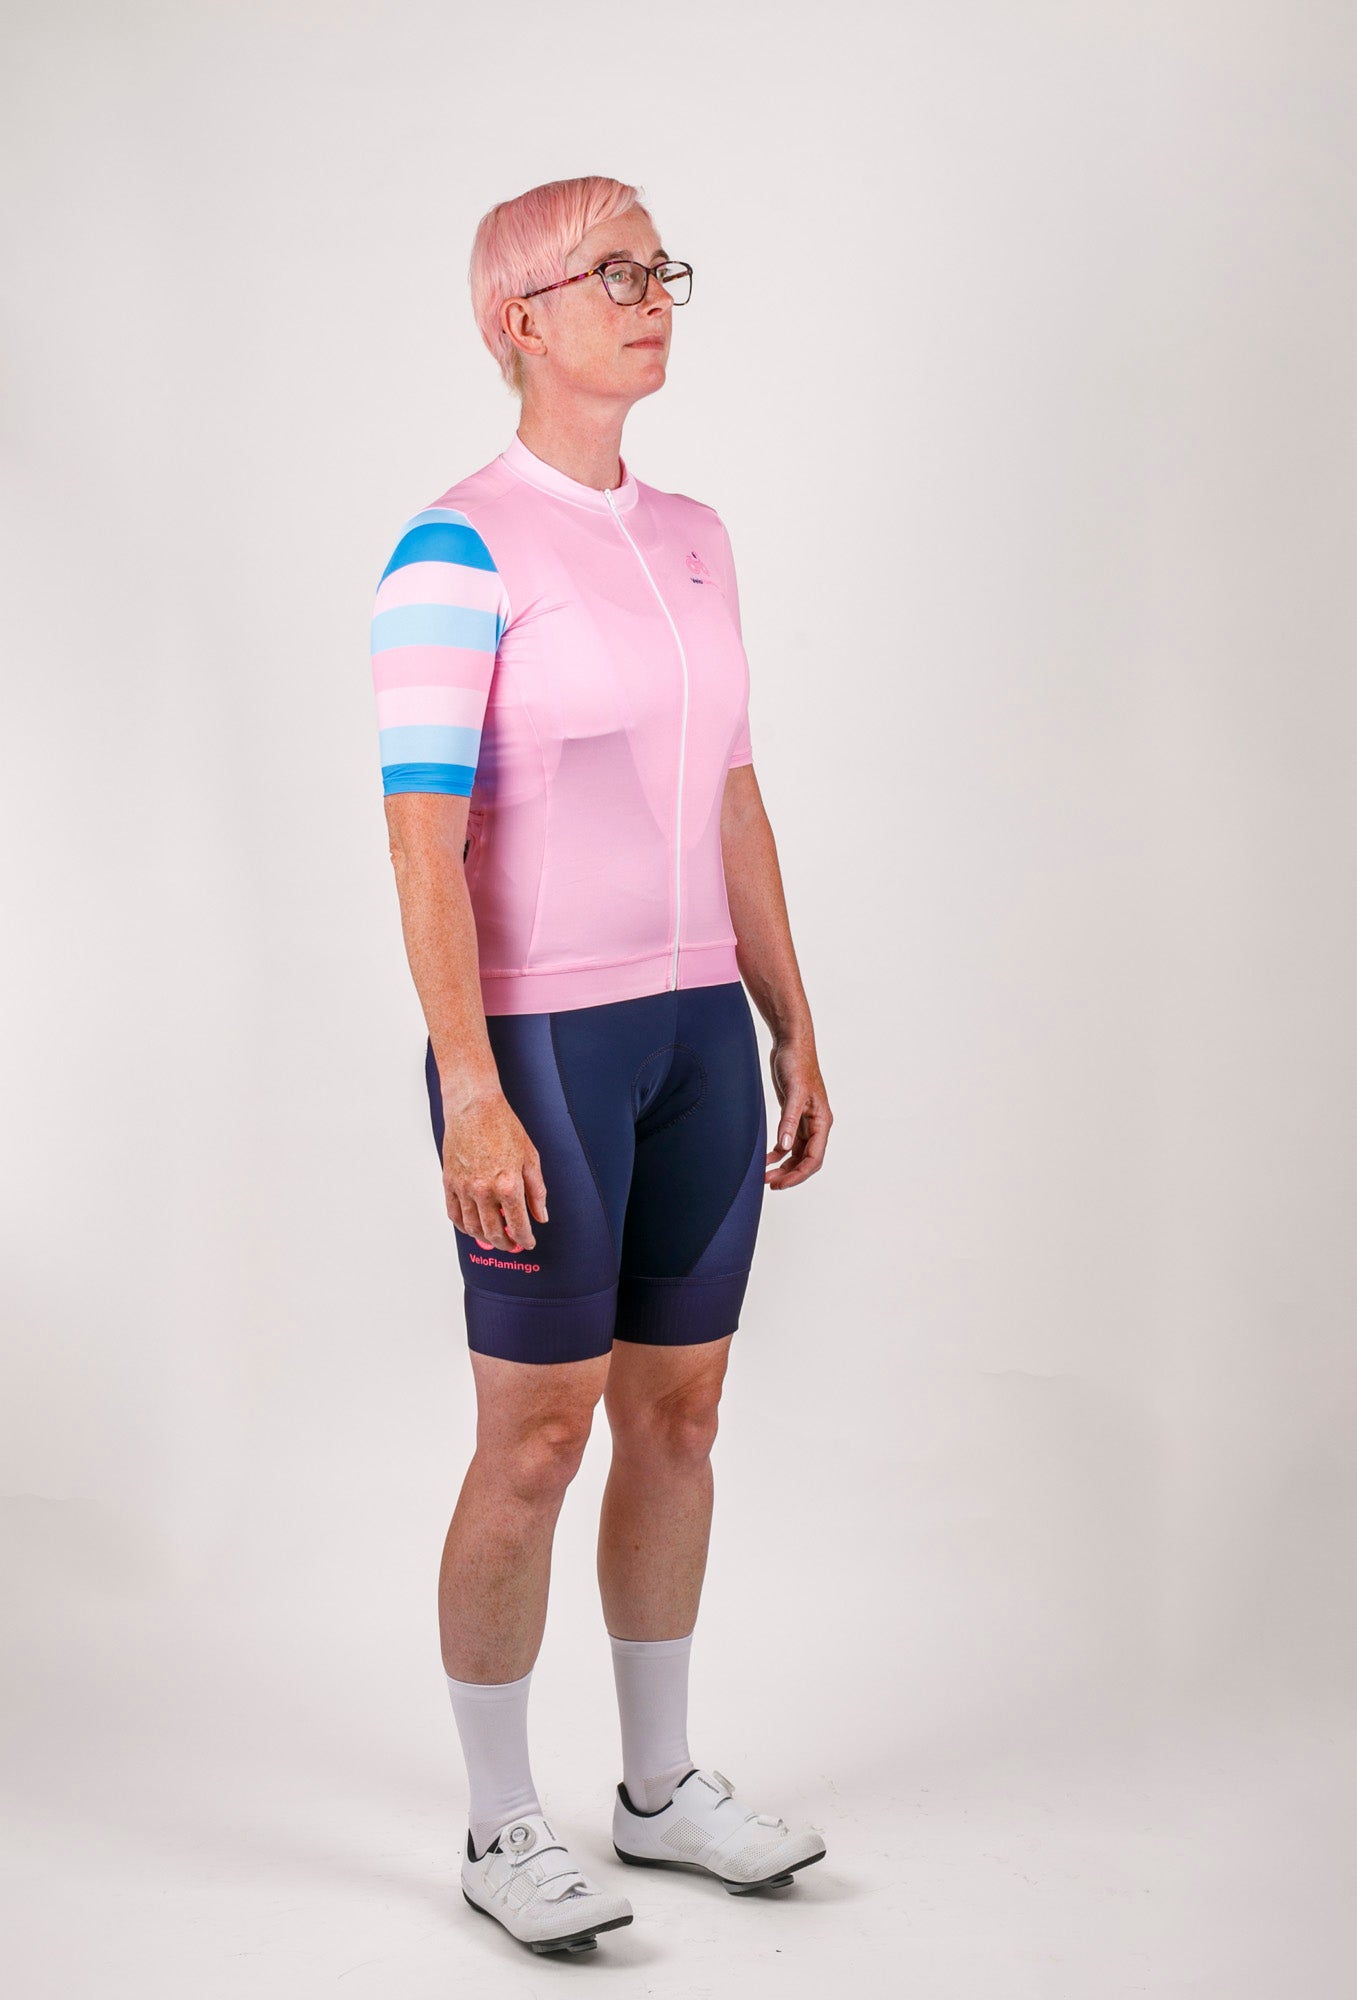 Flamingo Pink Women's Cycling Jersey